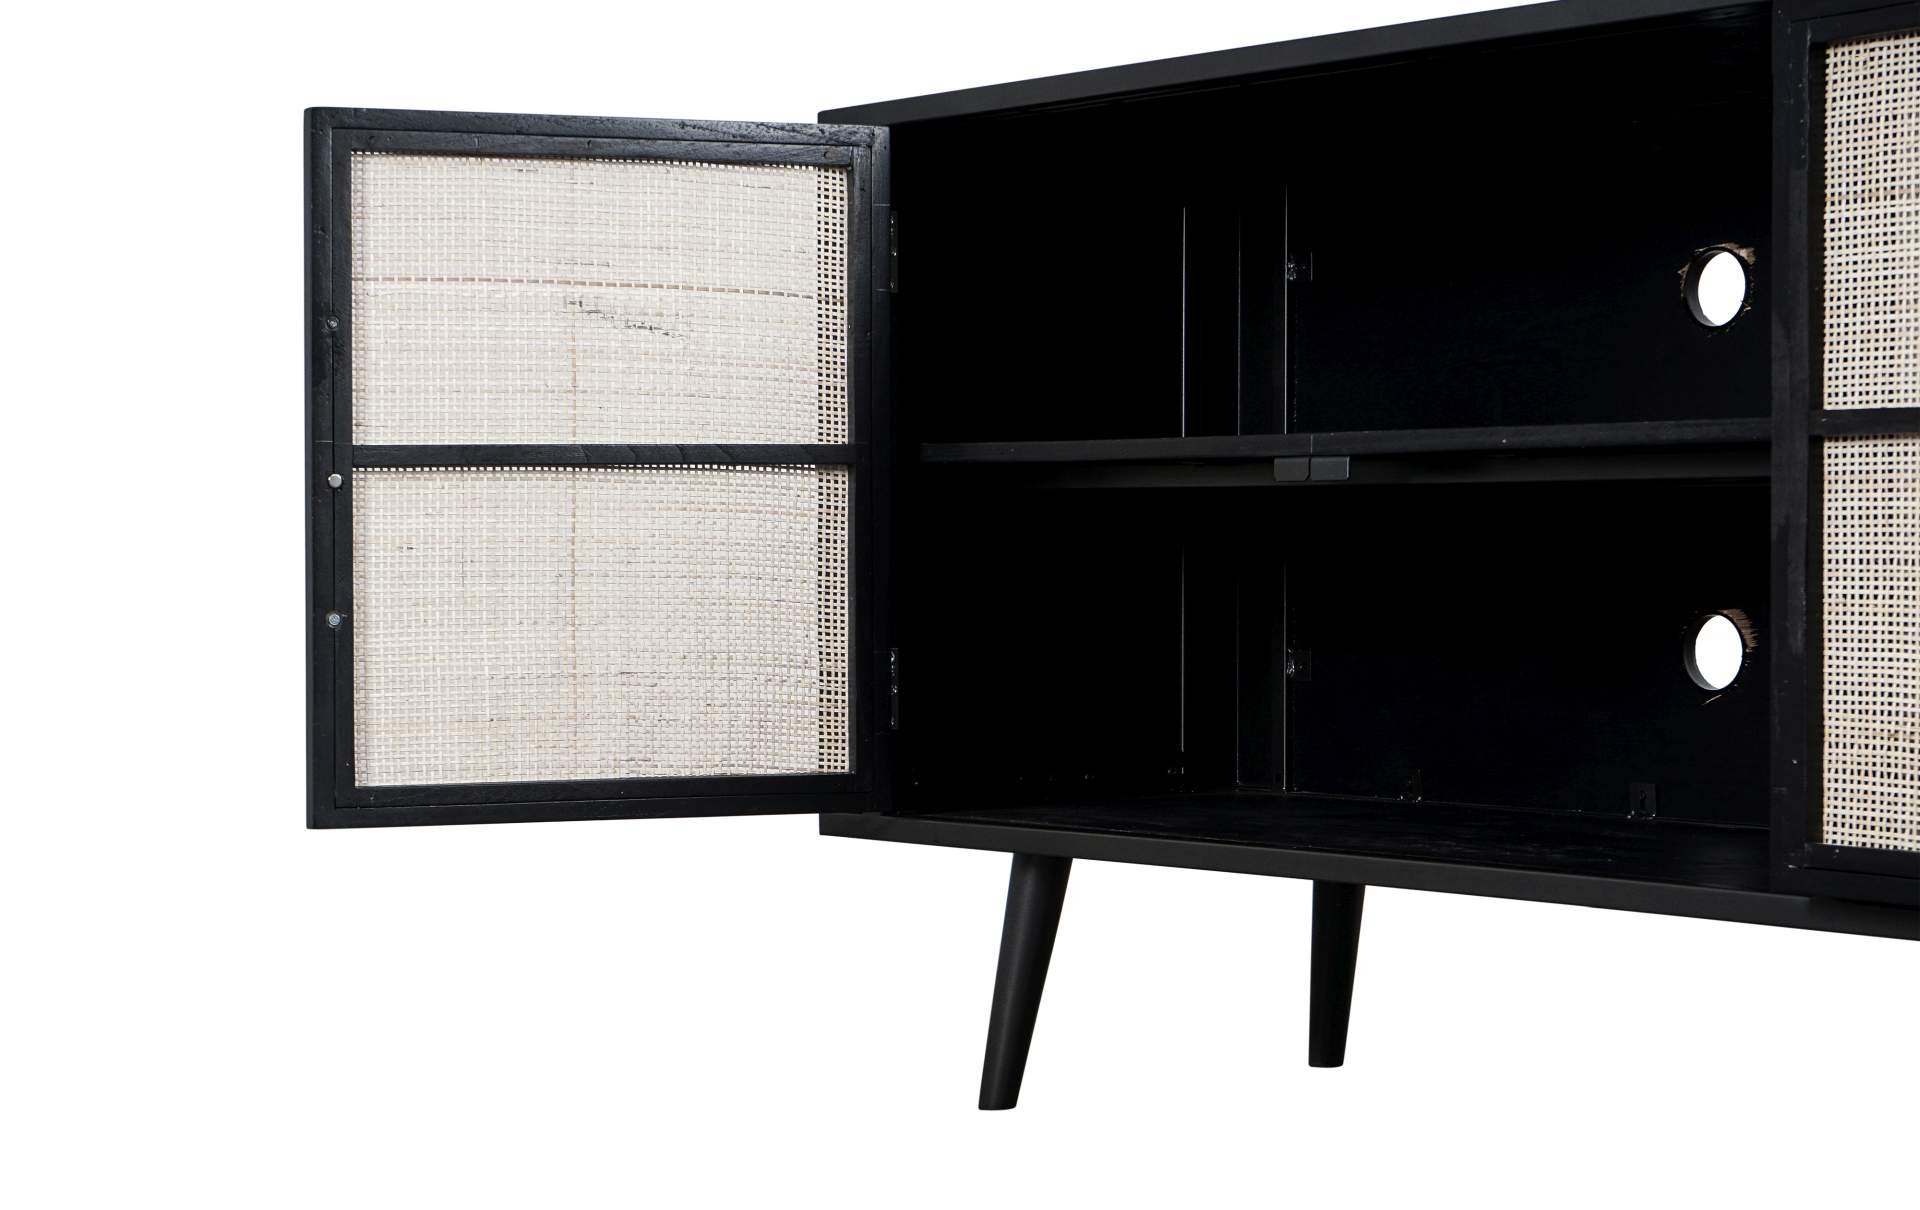 Das TV-Board Nordic Mindi Rattan überzeugt mit seinem Industriellen Design. Gefertigt wurde es aus Rattan und Mindi Holz, welches einen schwarzen Farbton besitzt. Das Gestell ist aus Metall und hat eine schwarze Farbe. Das TV-Board verfügt über vier Türen